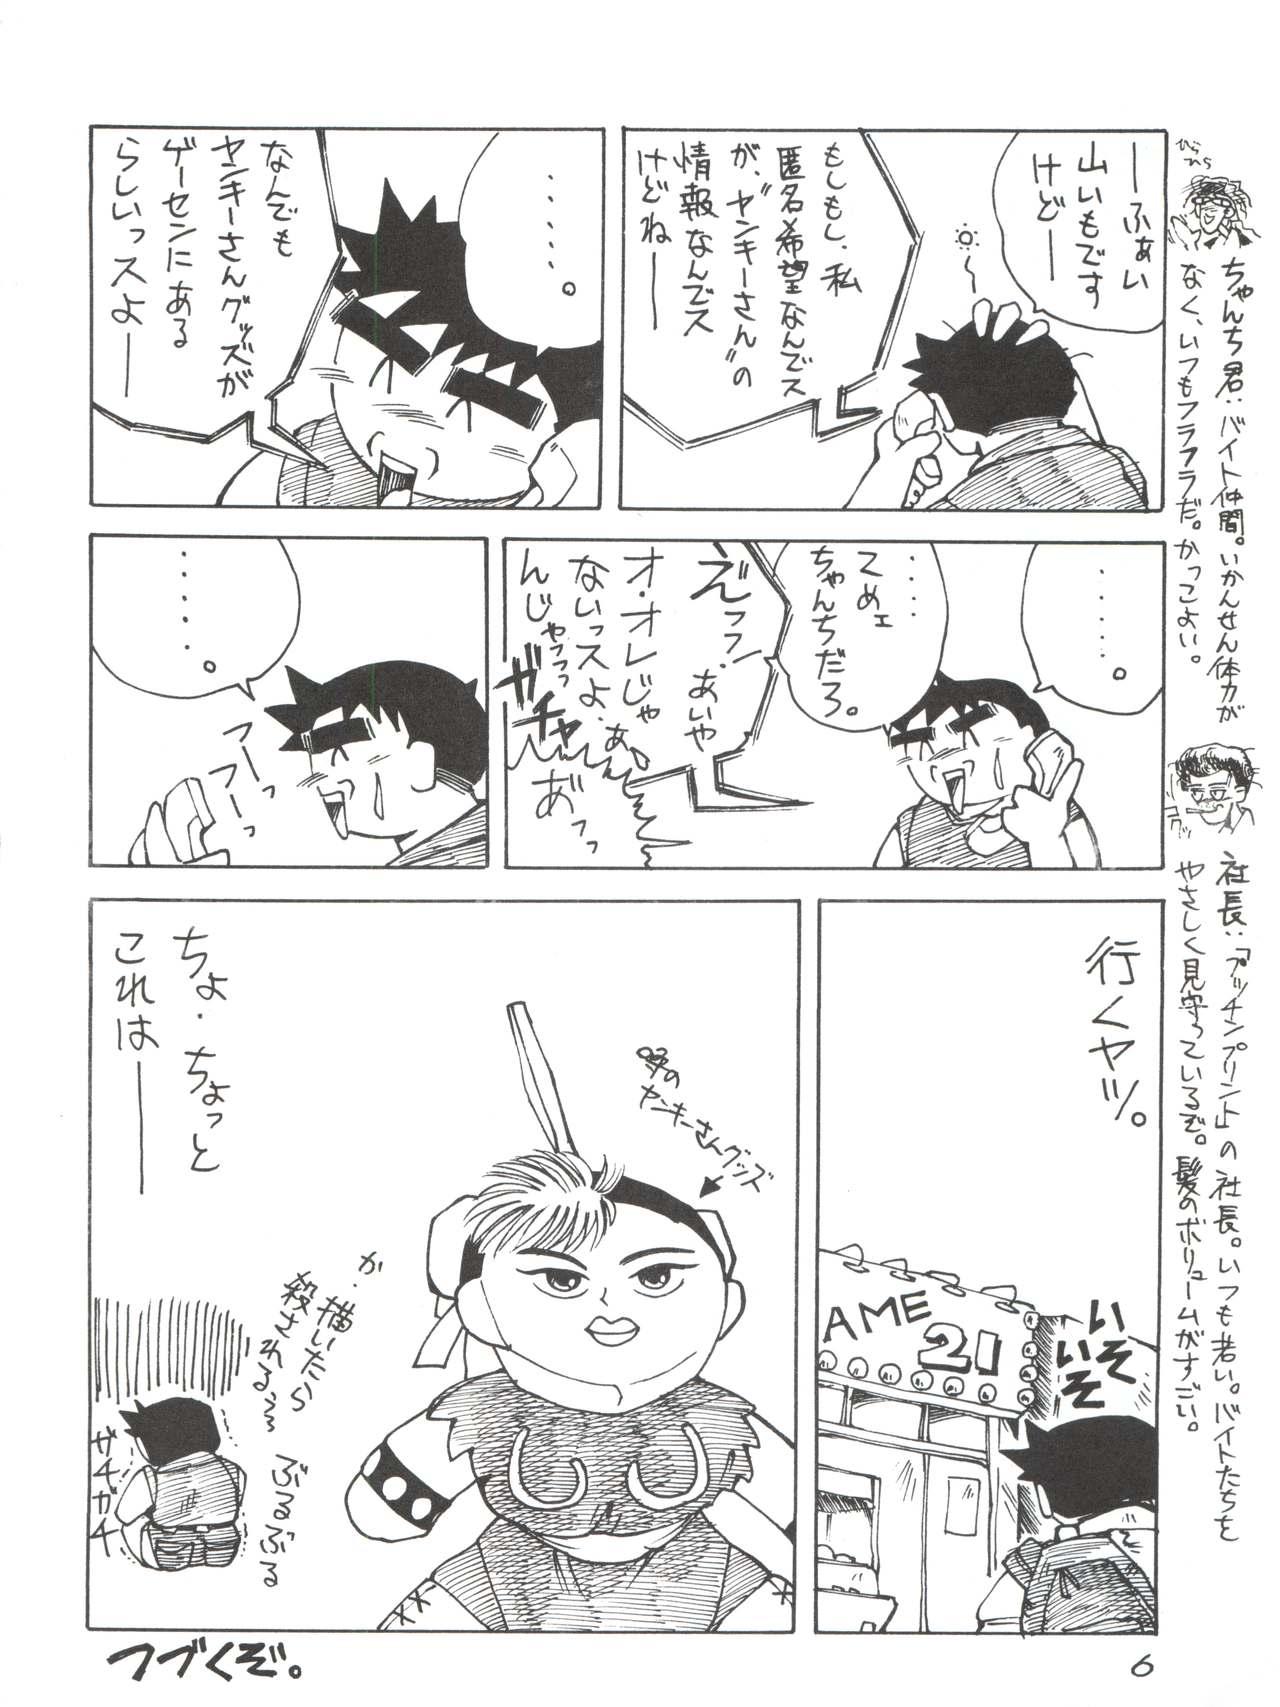 Fudendo Hime-chan no Urahon RIBON - Hime-chans ribbon Freak - Page 6